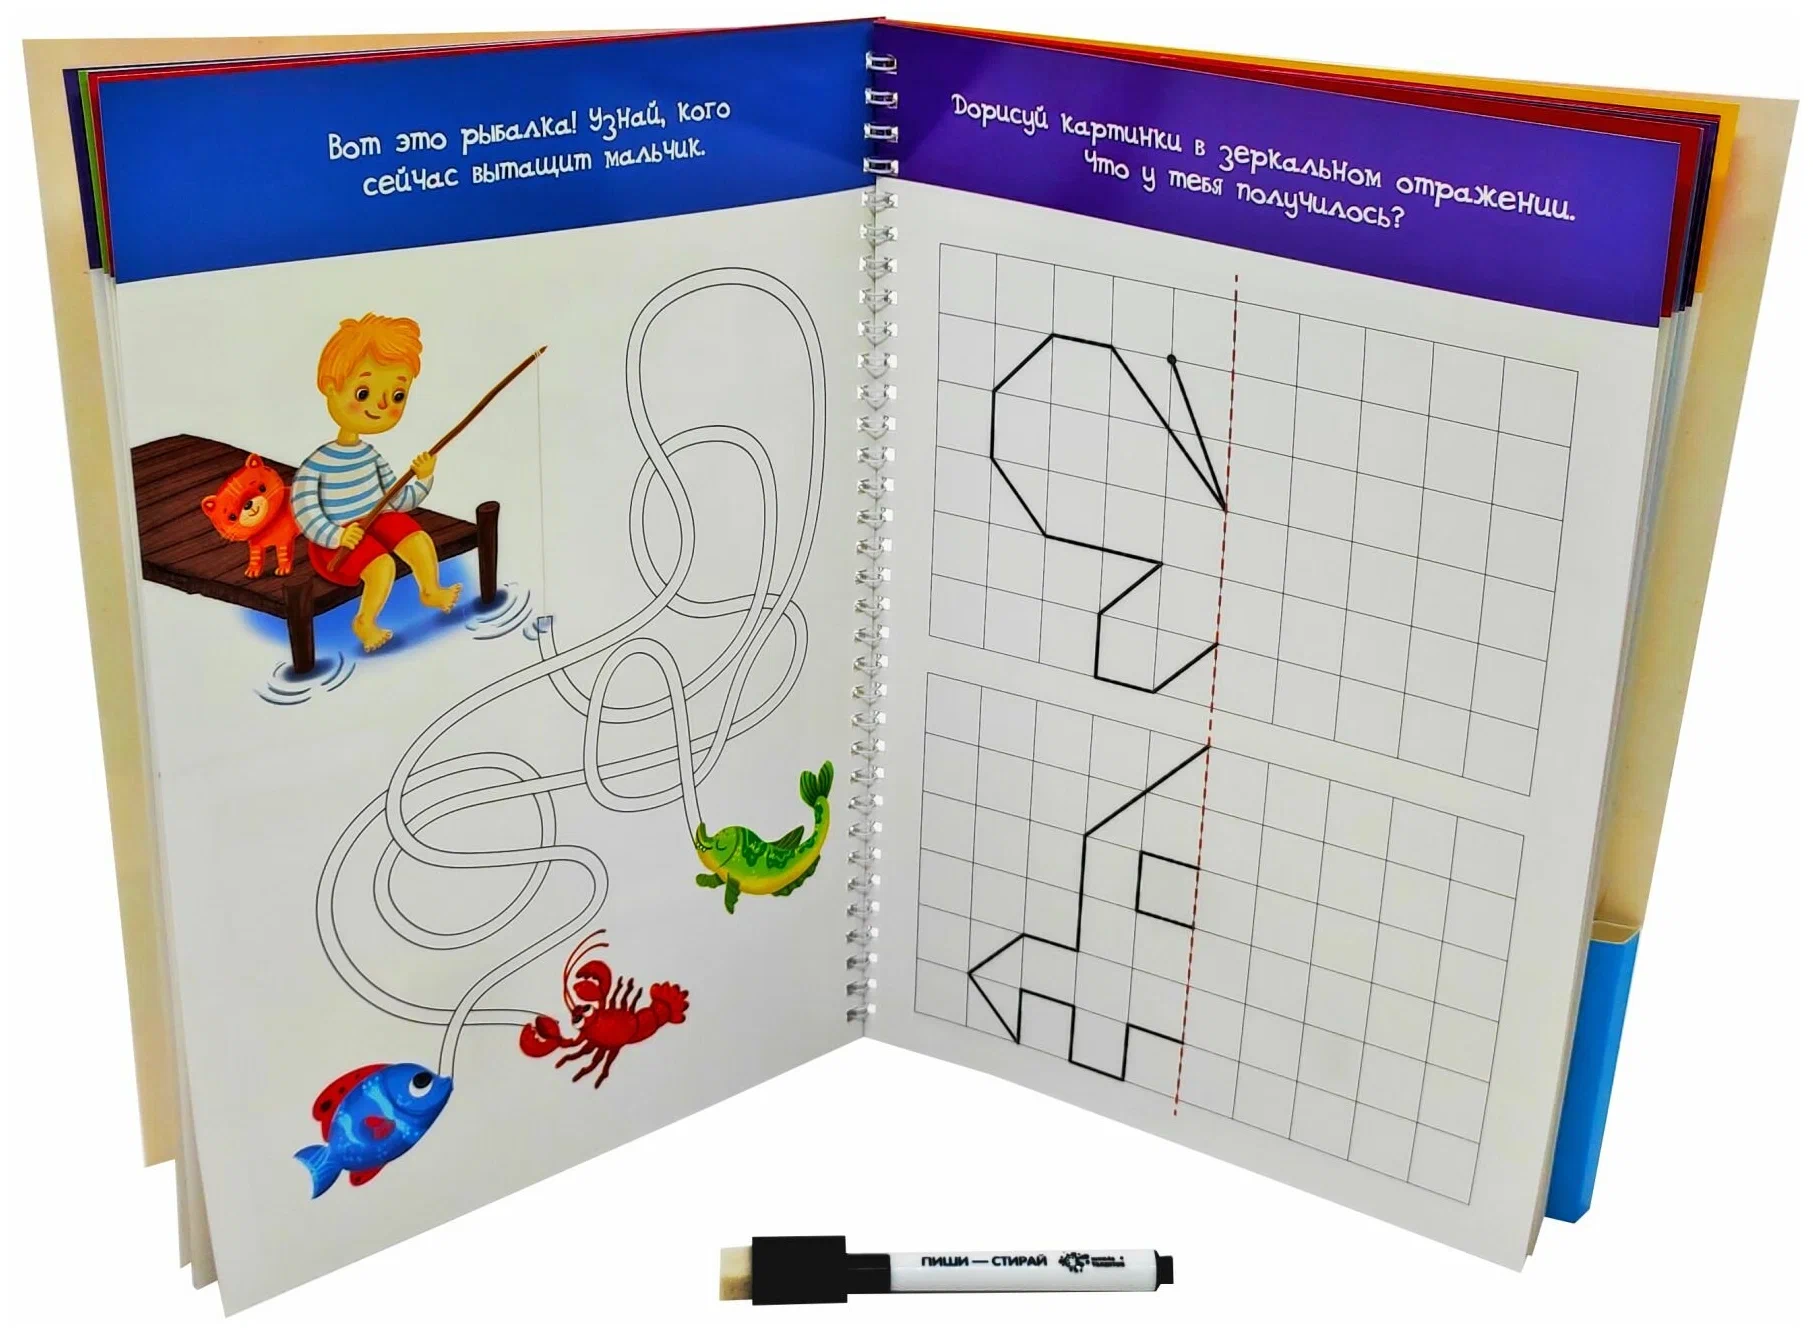 Многоразовая тетрадь "Пиши-стирай" для детей 4-5 лет